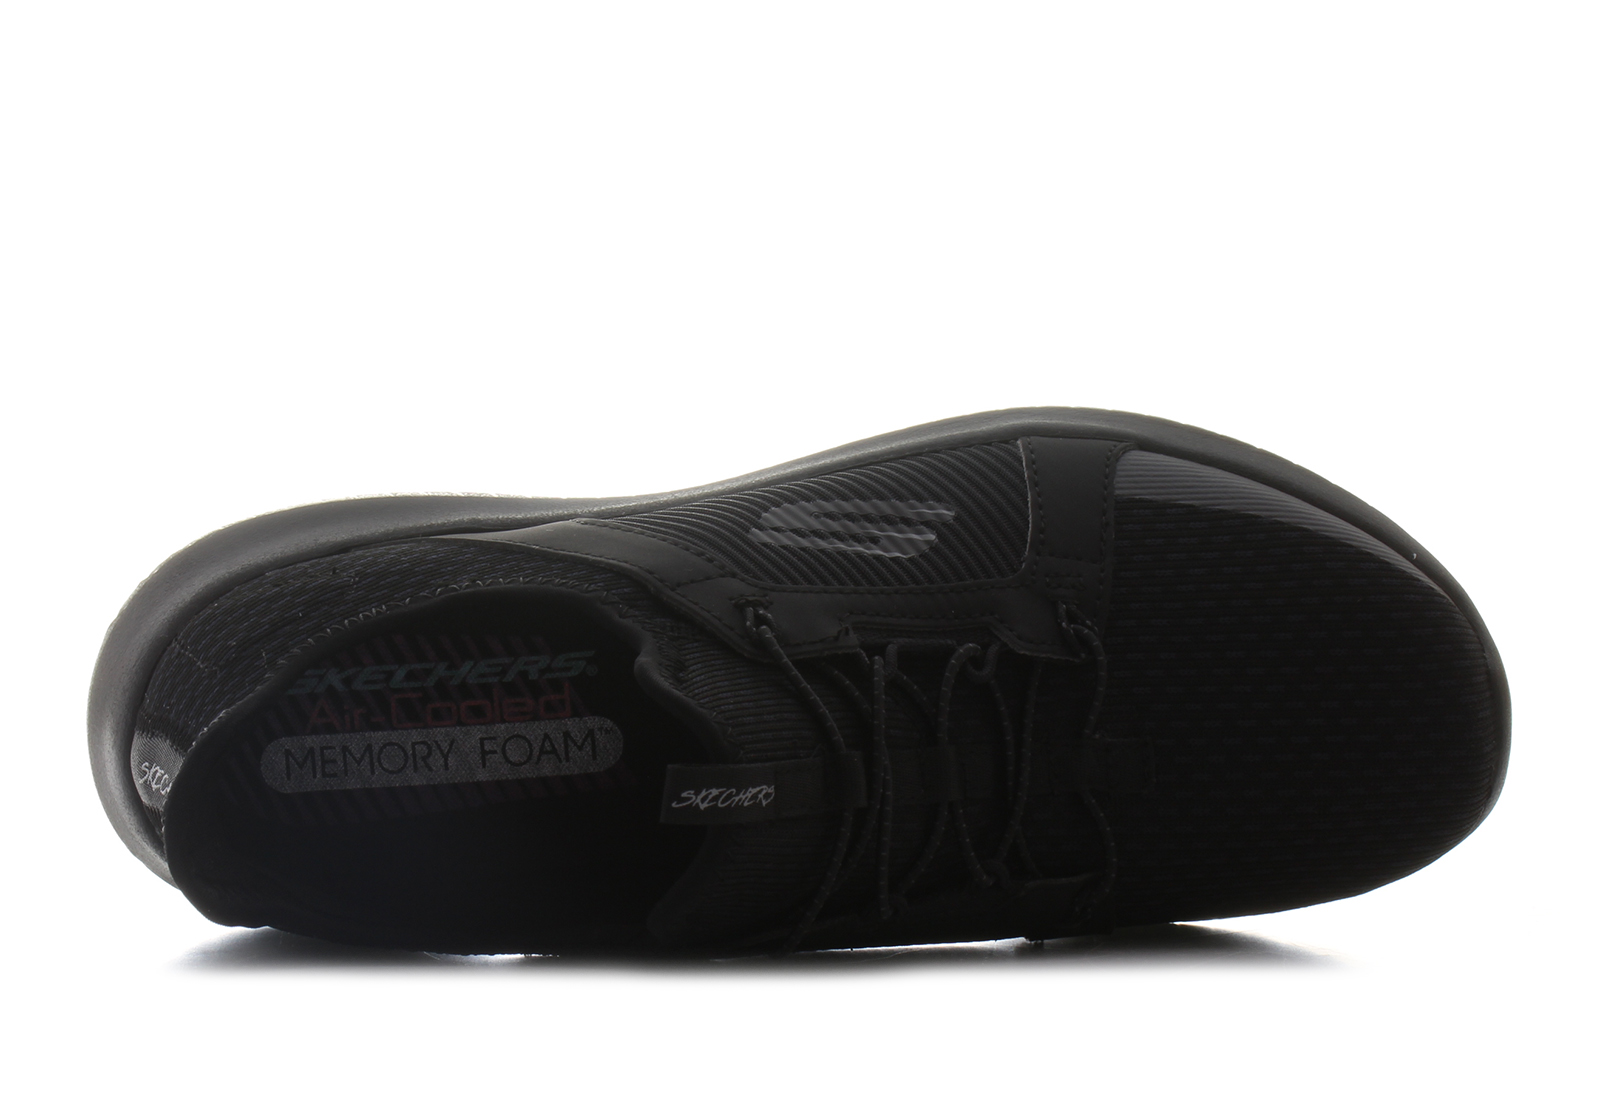 Skechers Sneakersy - Ultra Flex - Jaw - Tenisky, Topánky, Čižmy, Mokasíny, Sandále